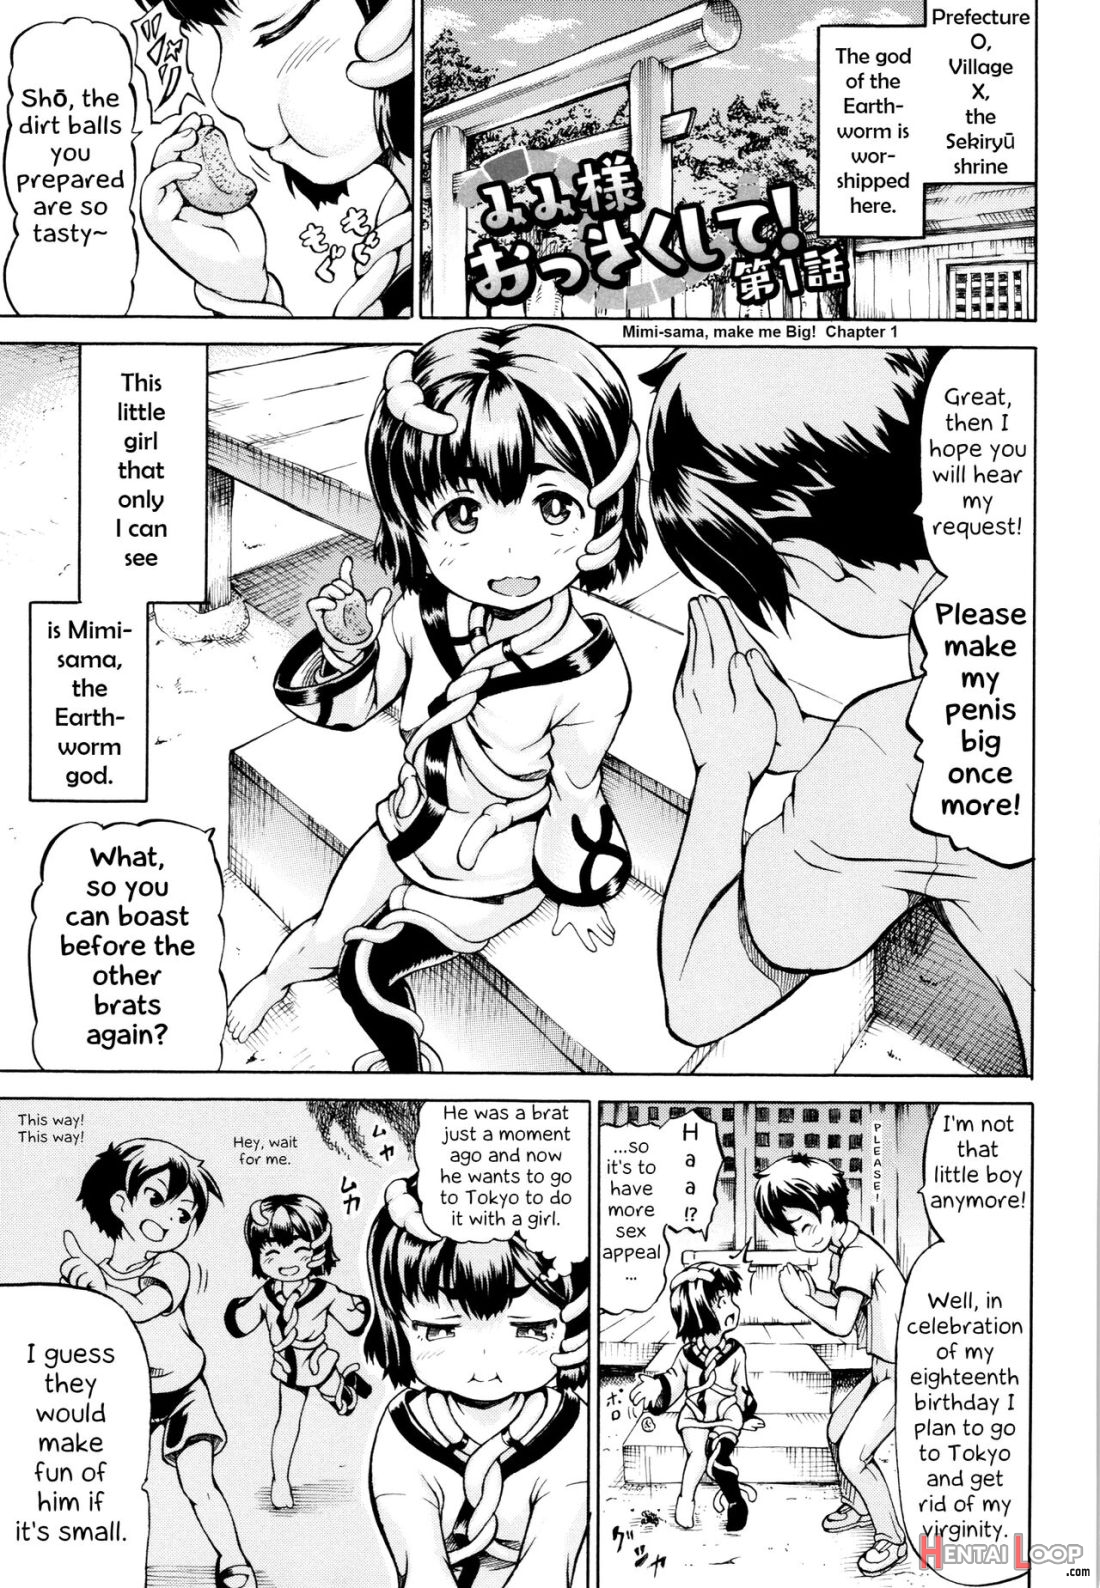 Mimi-sama Okkiku Shite! page 5